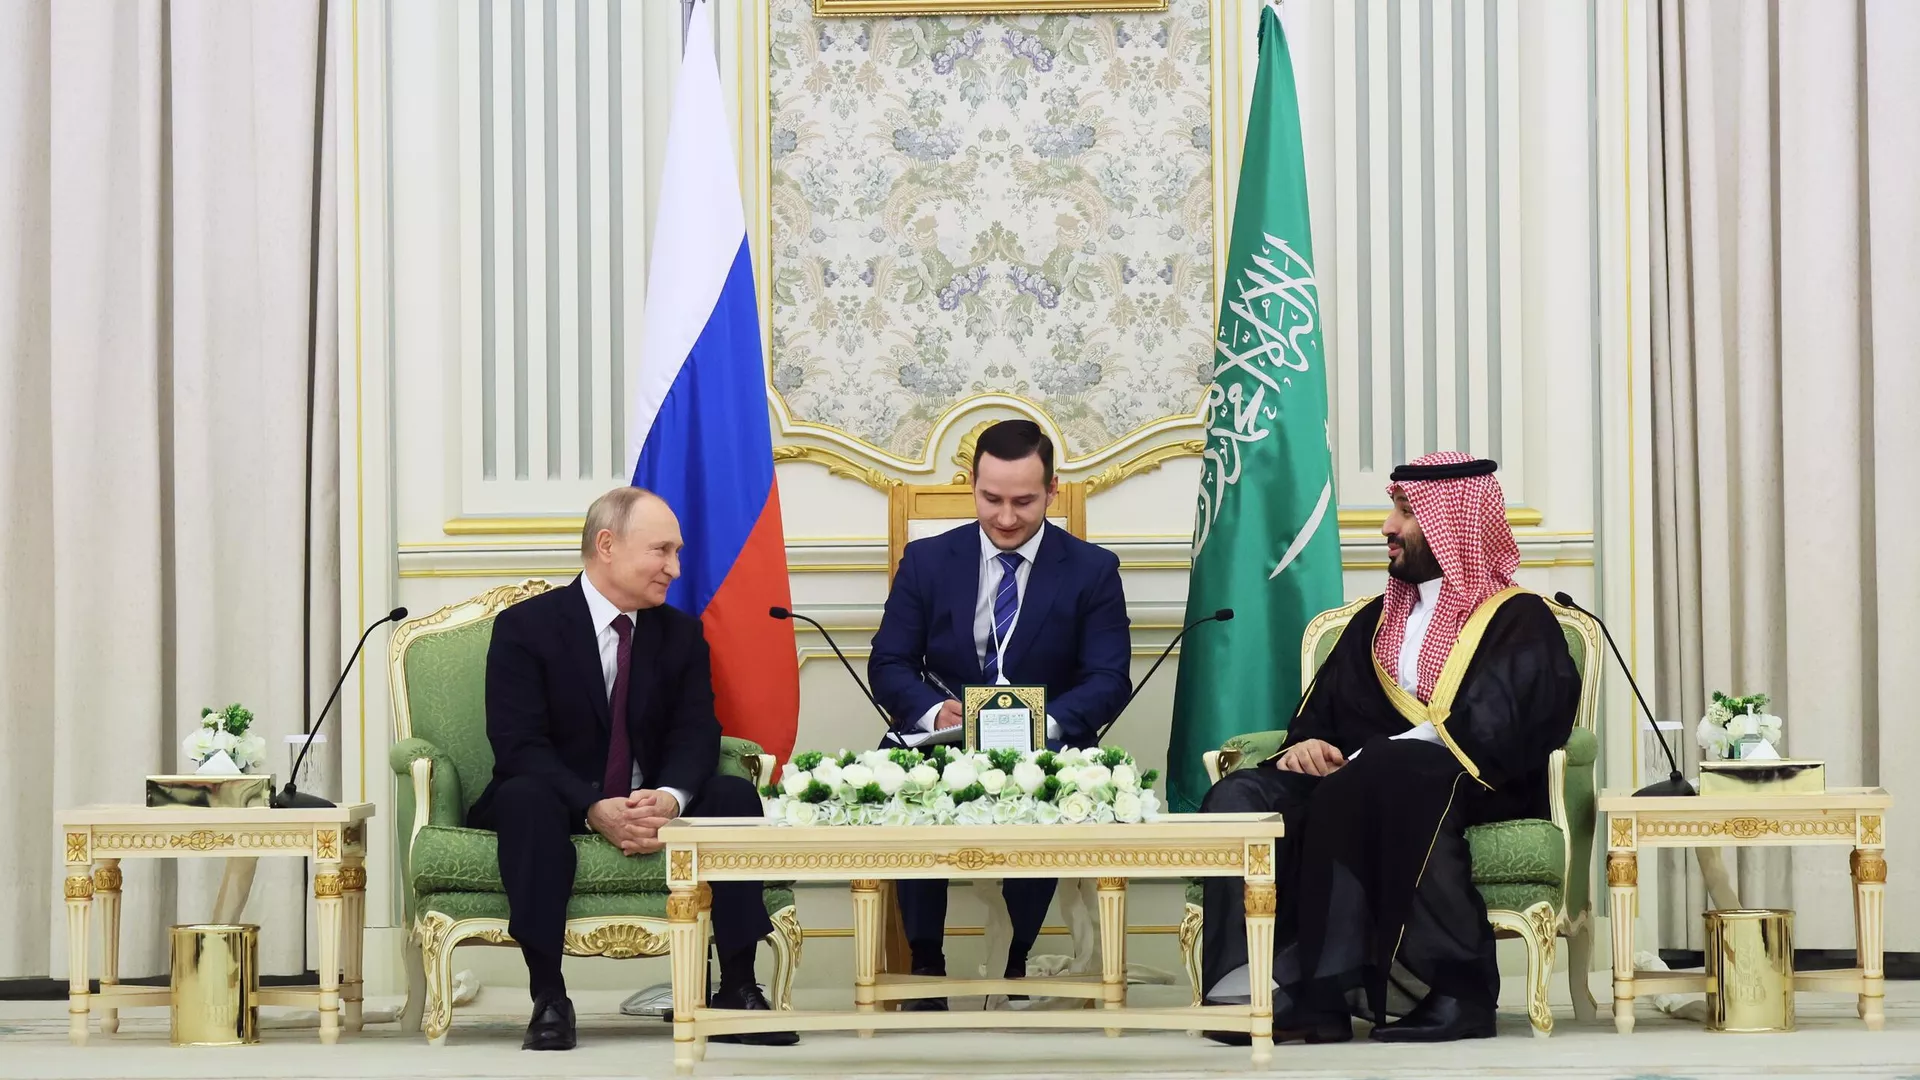 Ο Ρώσος Πρόεδρος Βλαντιμίρ Πούτιν και ο Πρίγκιπας διάδοχος, ο Πρόεδρος του Υπουργικού Συμβουλίου της Σαουδικής Αραβίας Μοχάμεντ μπιν Σαλμάν Αλ Σαούντ κατά τη διάρκεια συνάντησης στο Ριάντ - RIA Novosti, 1920, 12/07/2023